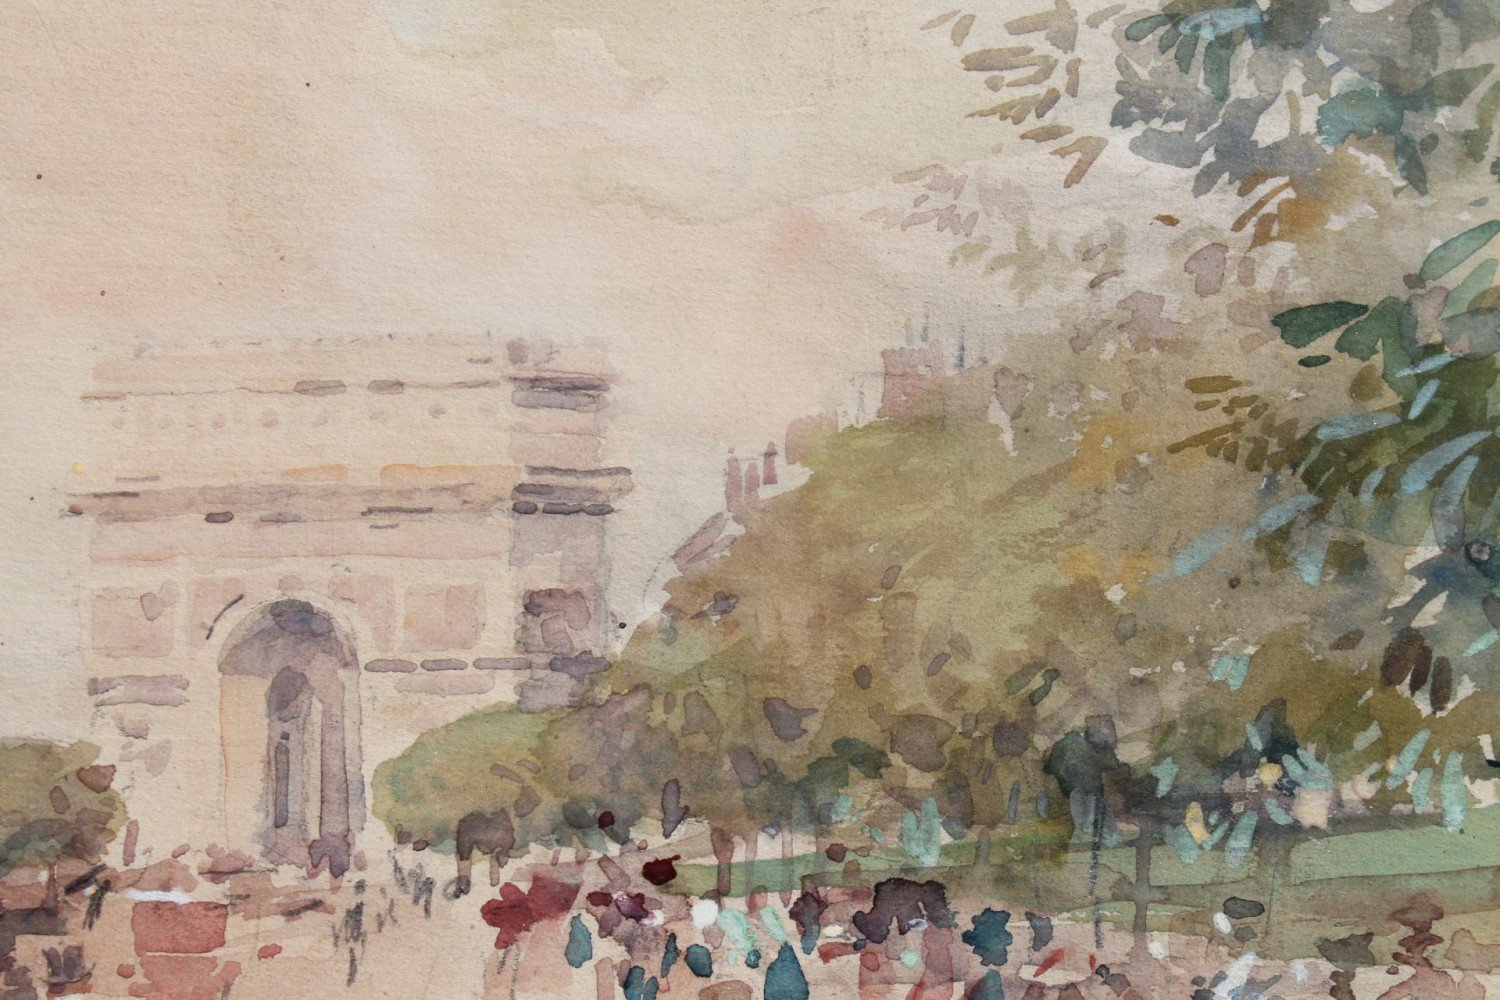 L'Avenue du Bois de Boulogne by Luther E. Van Gorder